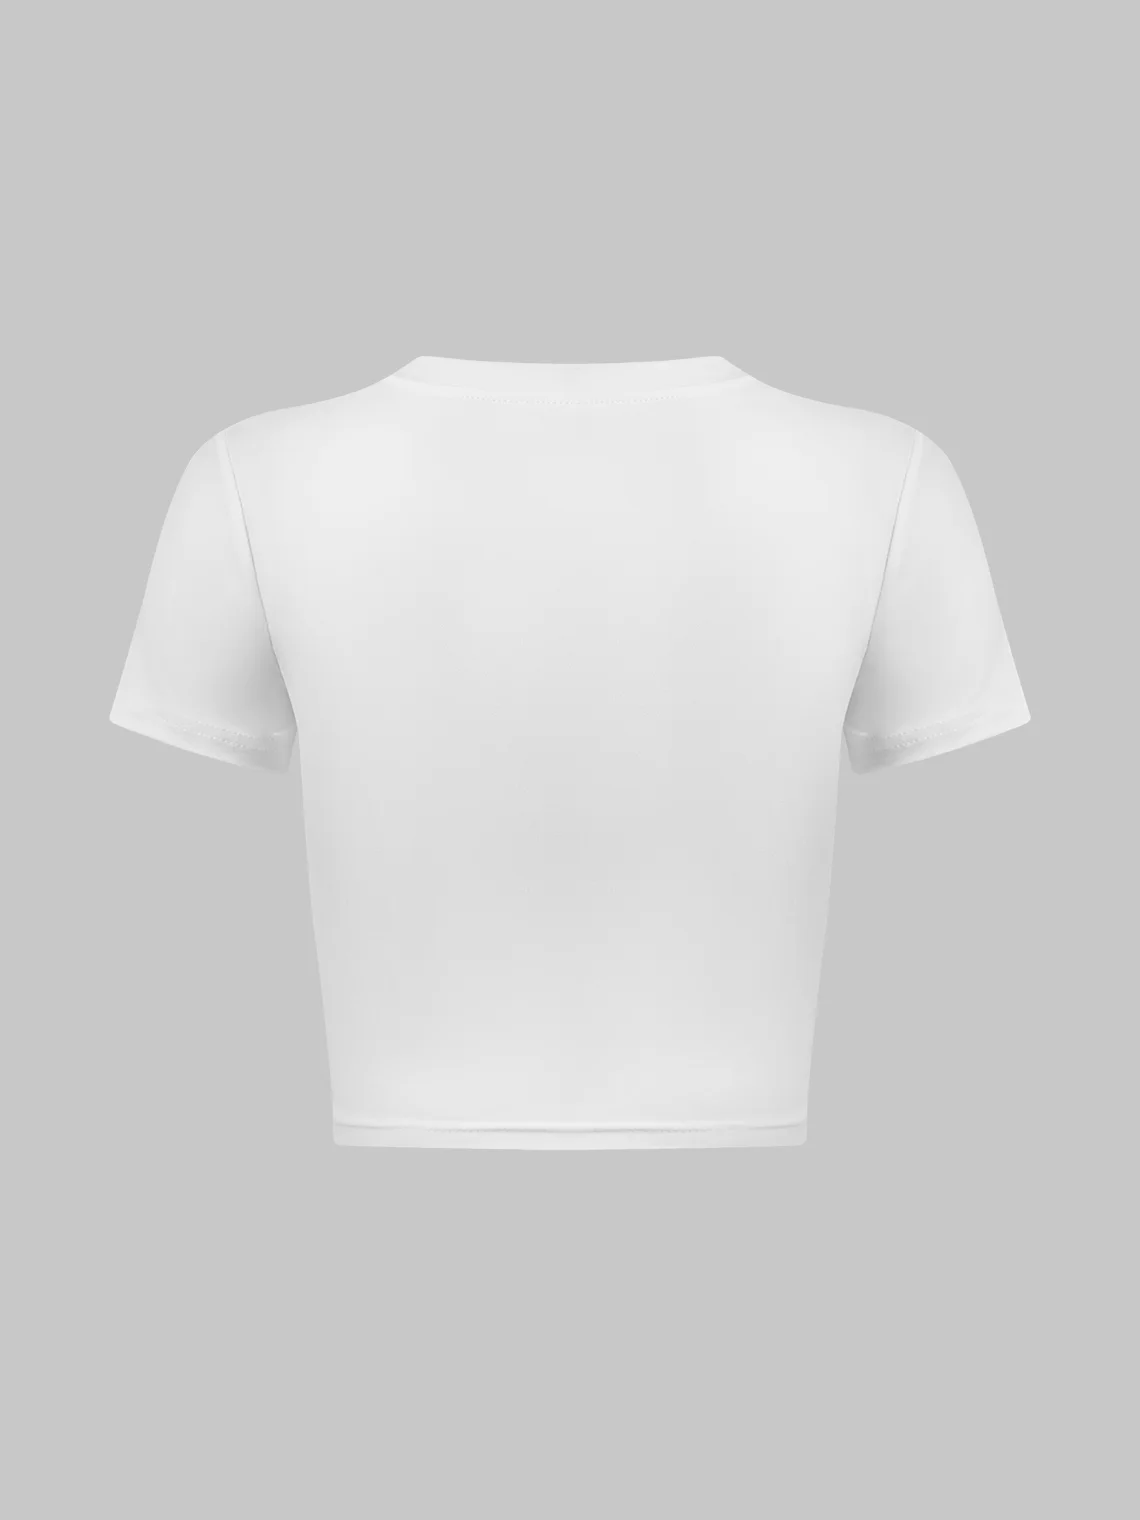 Y2k White I Love Letter Heart shape Top T-Shirt